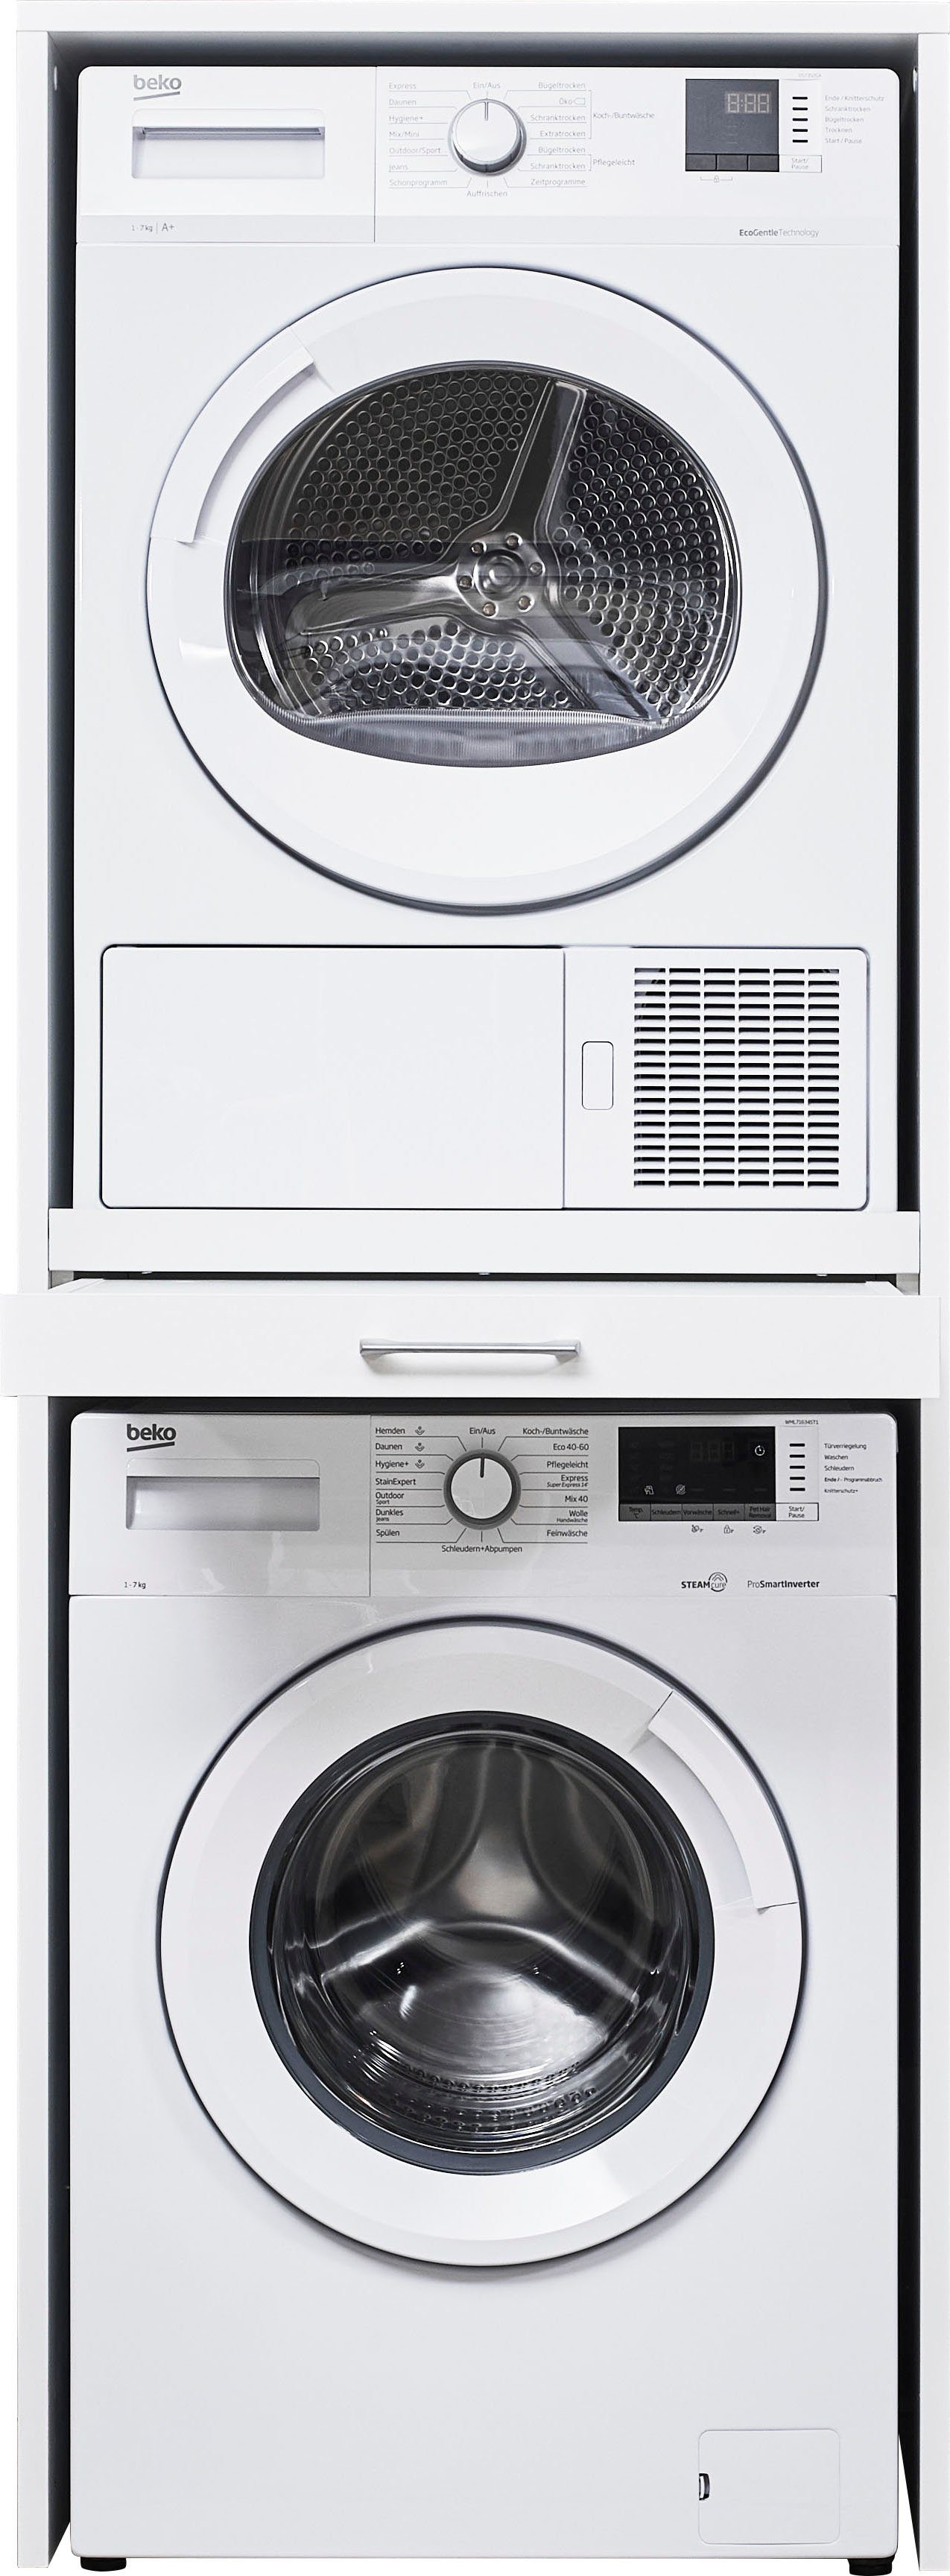 WASHTOWER Waschmaschinenumbauschrank Washtower weiß | weiß